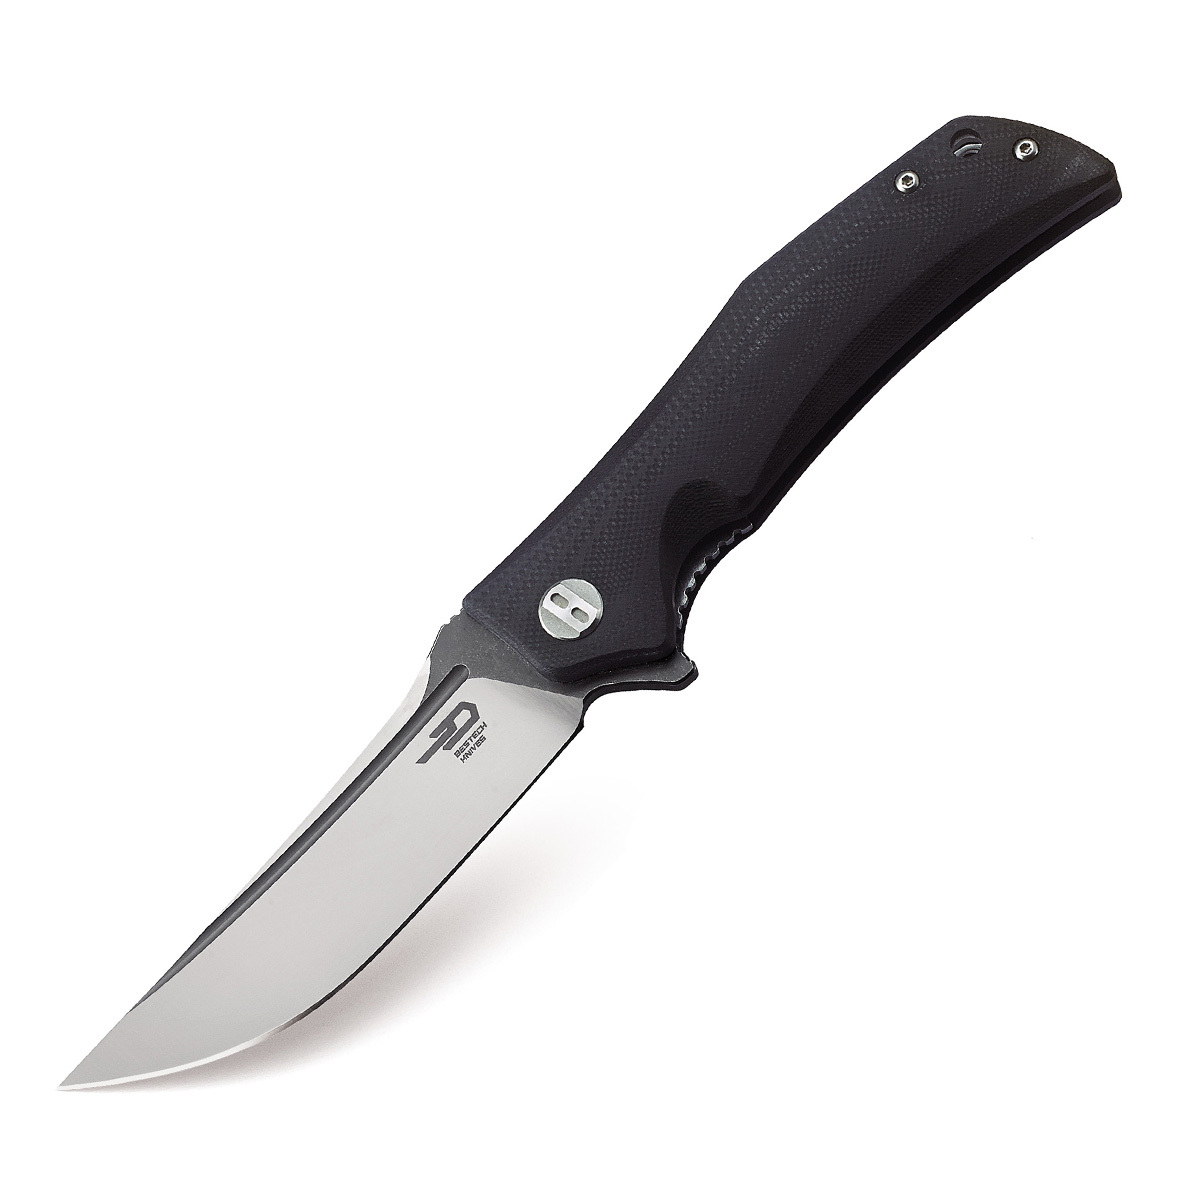 Складной нож Bestech Scimitar, сталь D2, рукоять G10 складной нож bestech fin blue brown сталь 14c28n g10